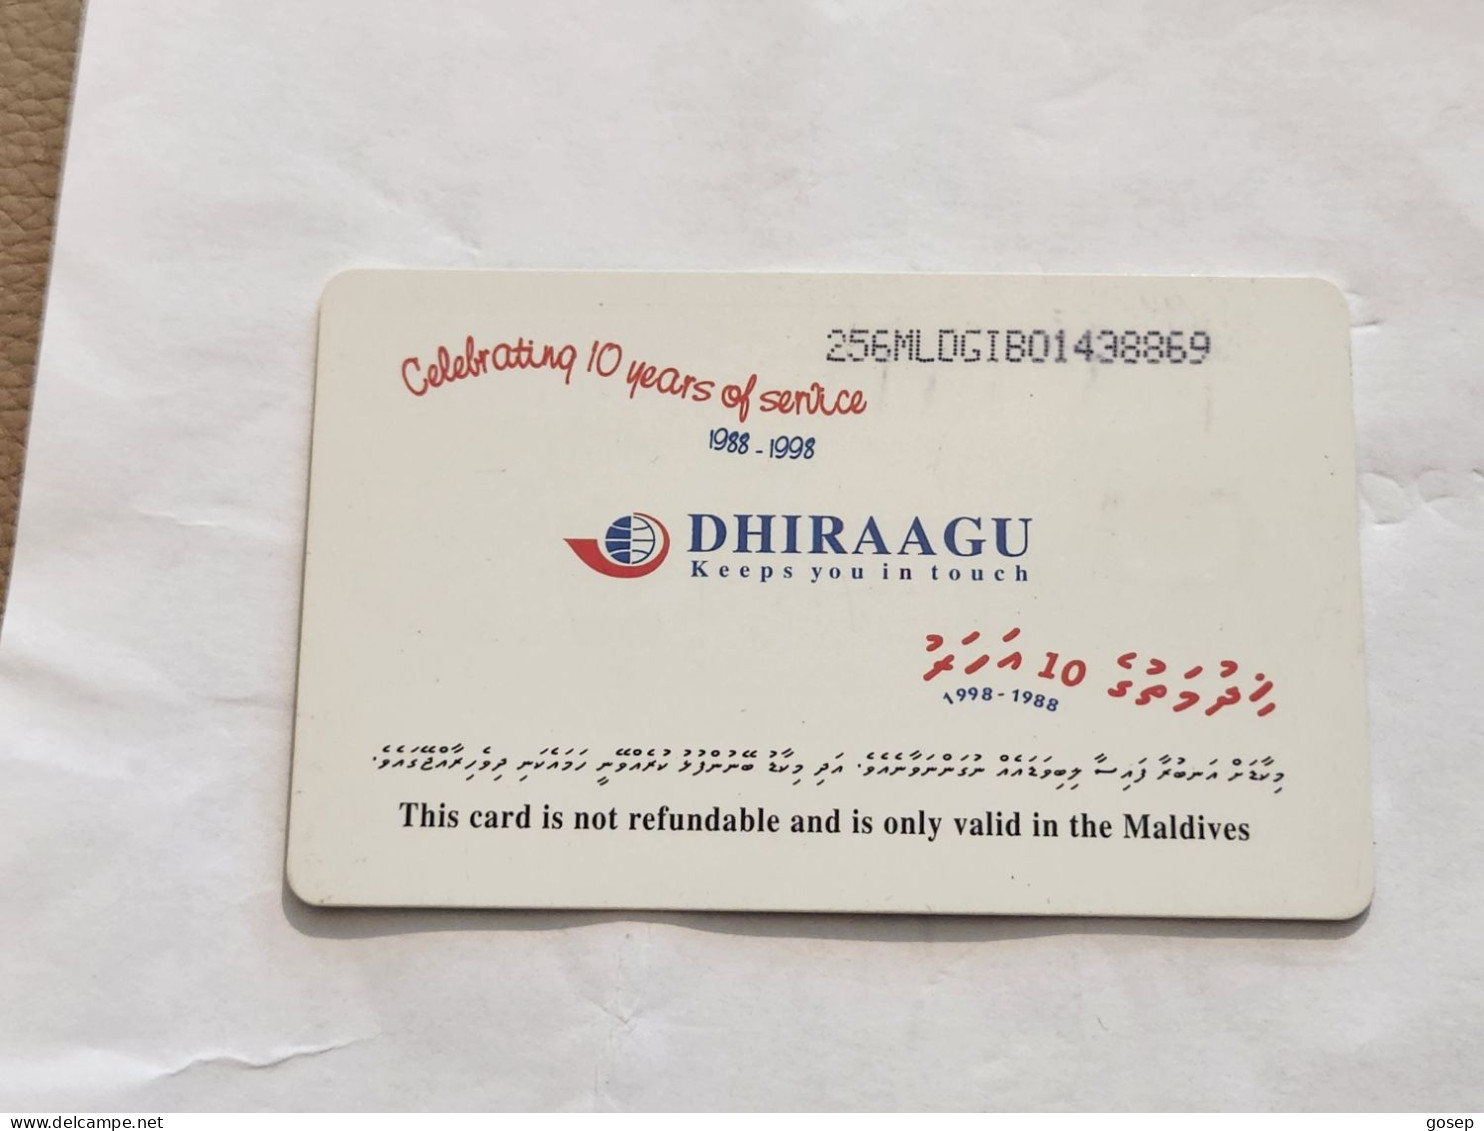 Maldives-(256MLDGIB-MAL-C-01)-save The Turtle-(42)-(RF30)-(256MLDGIB01438869)-used Card+1card Prepiad Free - Maldivas